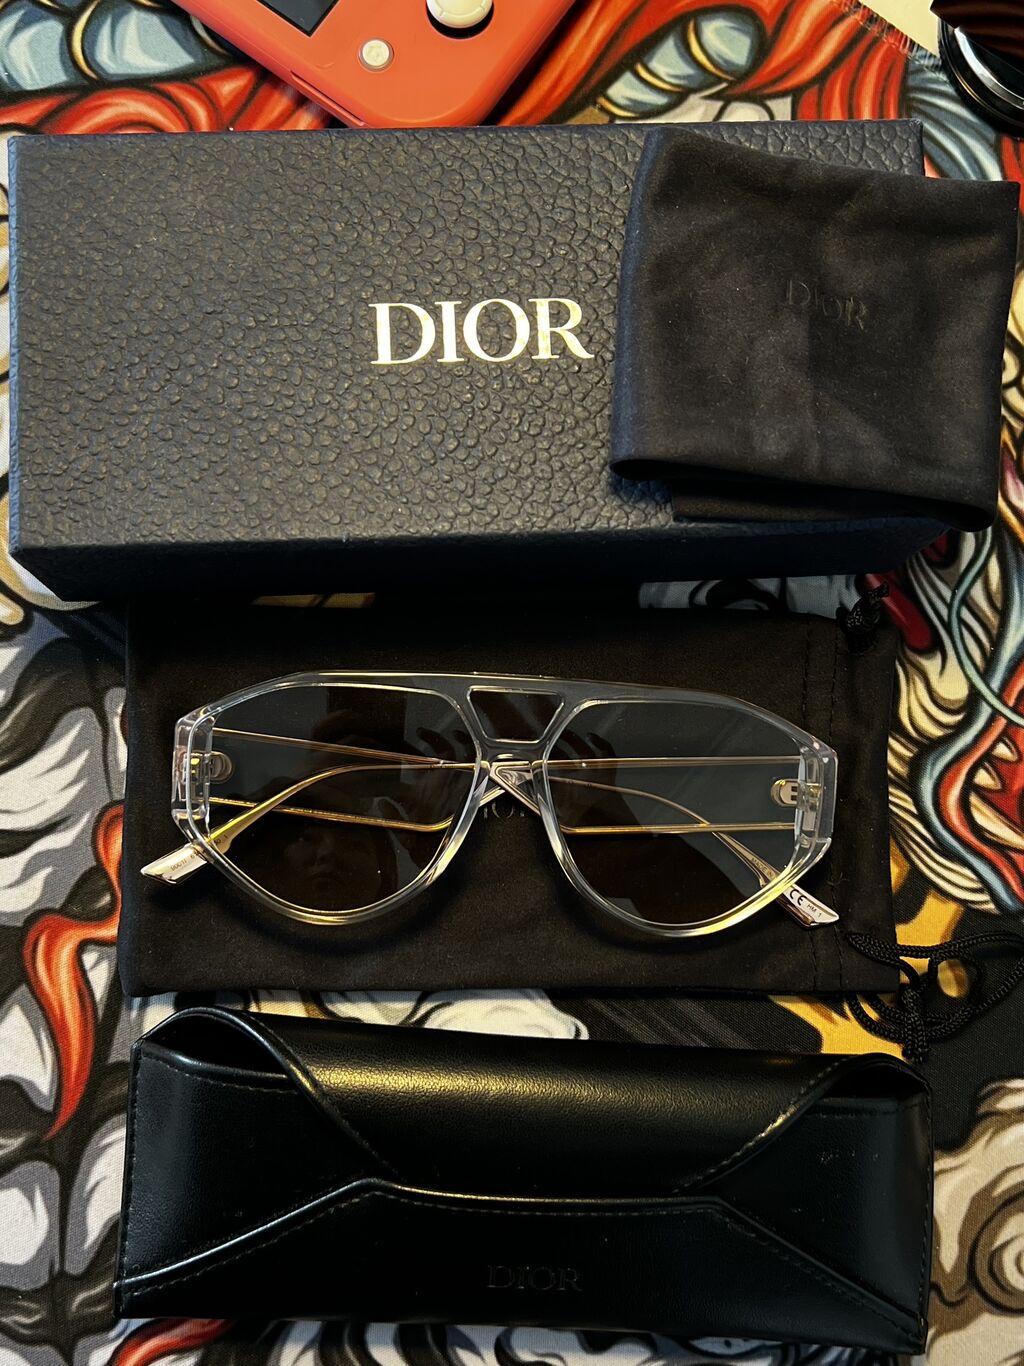 Продам очки dior оригинал  цена 800 грн в каталоге Очки  Купить женские  вещи по доступной цене на Шафе  Украина 78824975